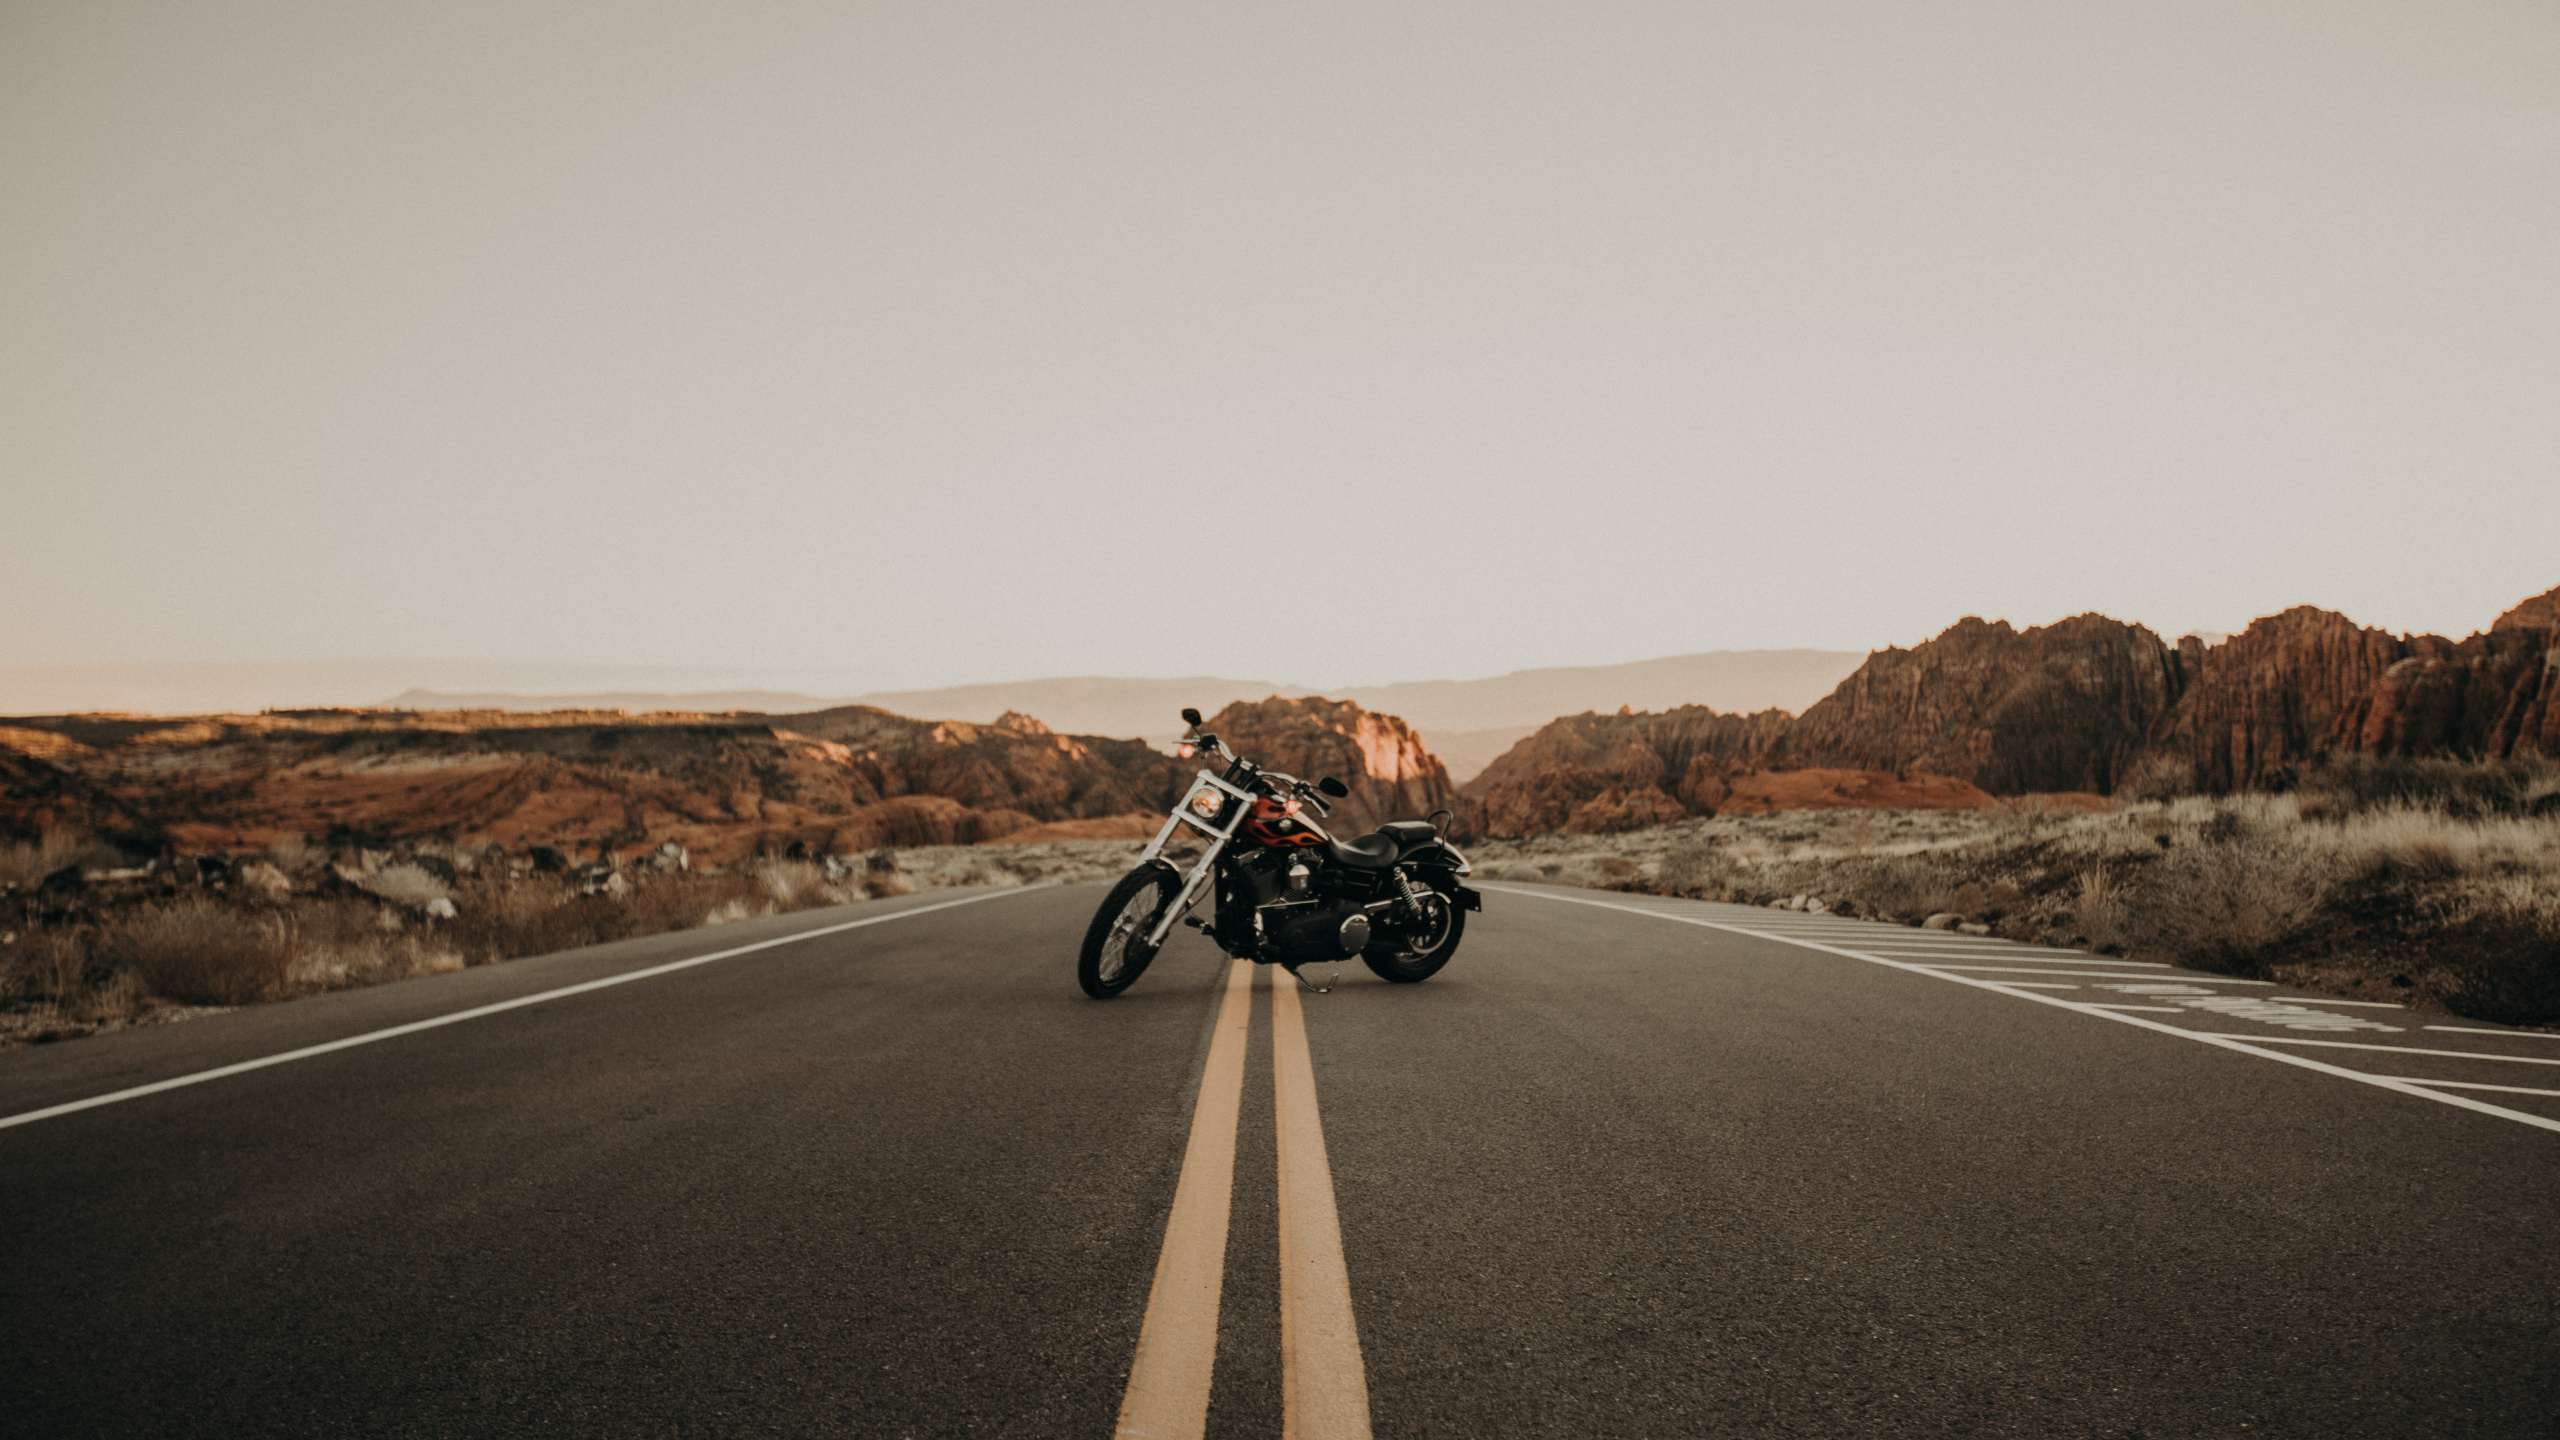 Motocicleta en Blanco y Negro en la Carretera Durante el Día. Wallpaper in 2560x1440 Resolution